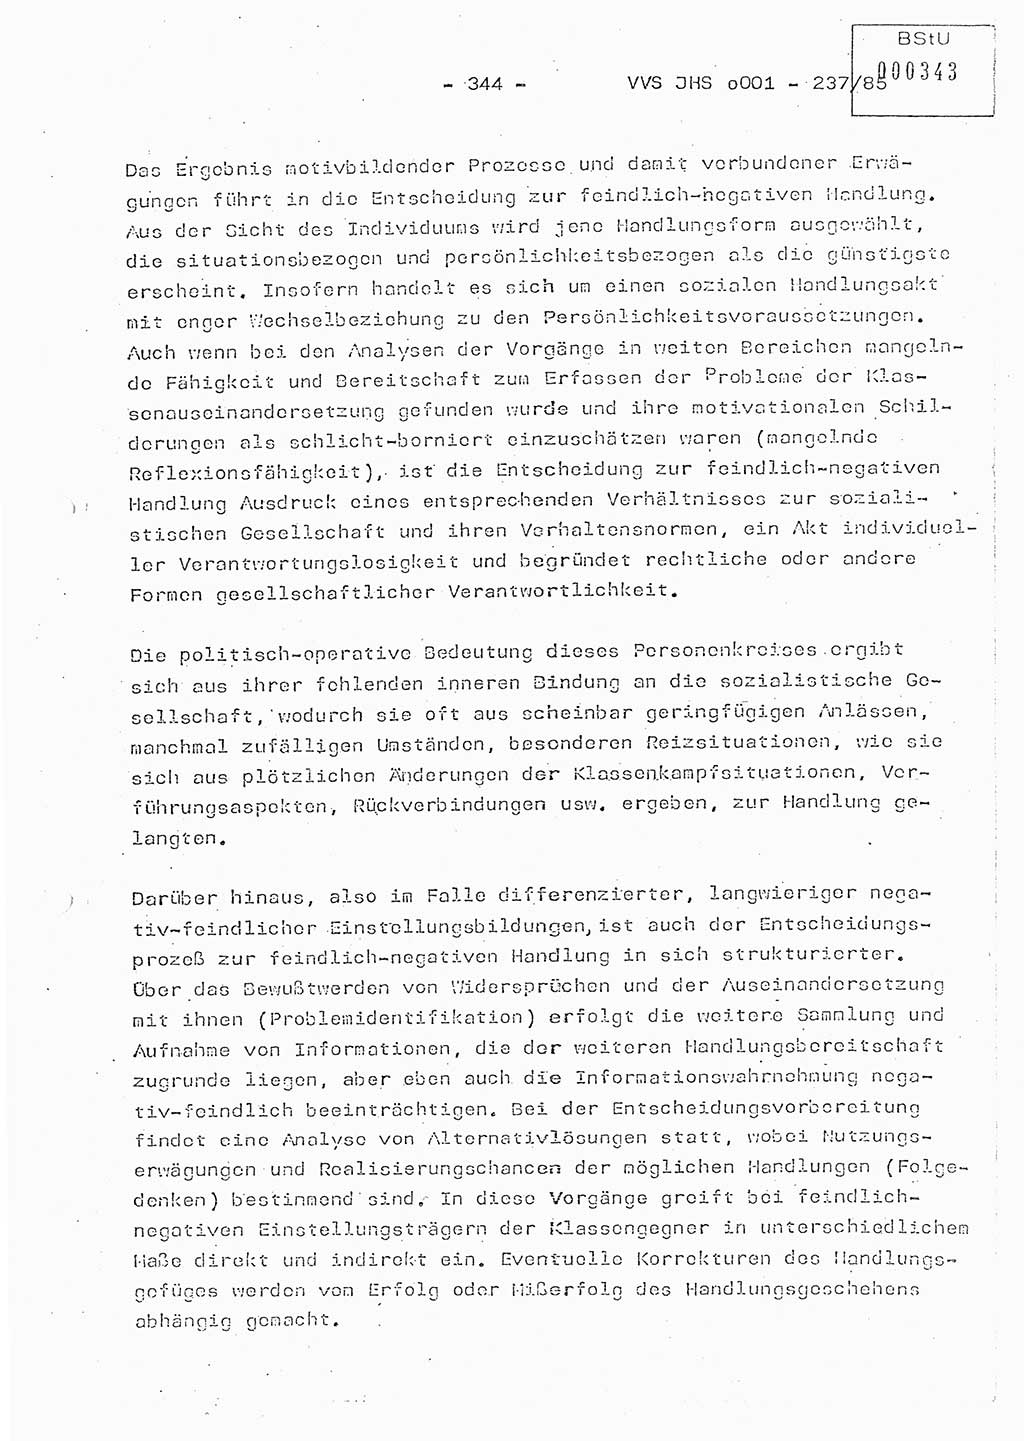 Dissertation Oberstleutnant Peter Jakulski (JHS), Oberstleutnat Christian Rudolph (HA Ⅸ), Major Horst Böttger (ZMD), Major Wolfgang Grüneberg (JHS), Major Albert Meutsch (JHS), Ministerium für Staatssicherheit (MfS) [Deutsche Demokratische Republik (DDR)], Juristische Hochschule (JHS), Vertrauliche Verschlußsache (VVS) o001-237/85, Potsdam 1985, Seite 344 (Diss. MfS DDR JHS VVS o001-237/85 1985, S. 344)